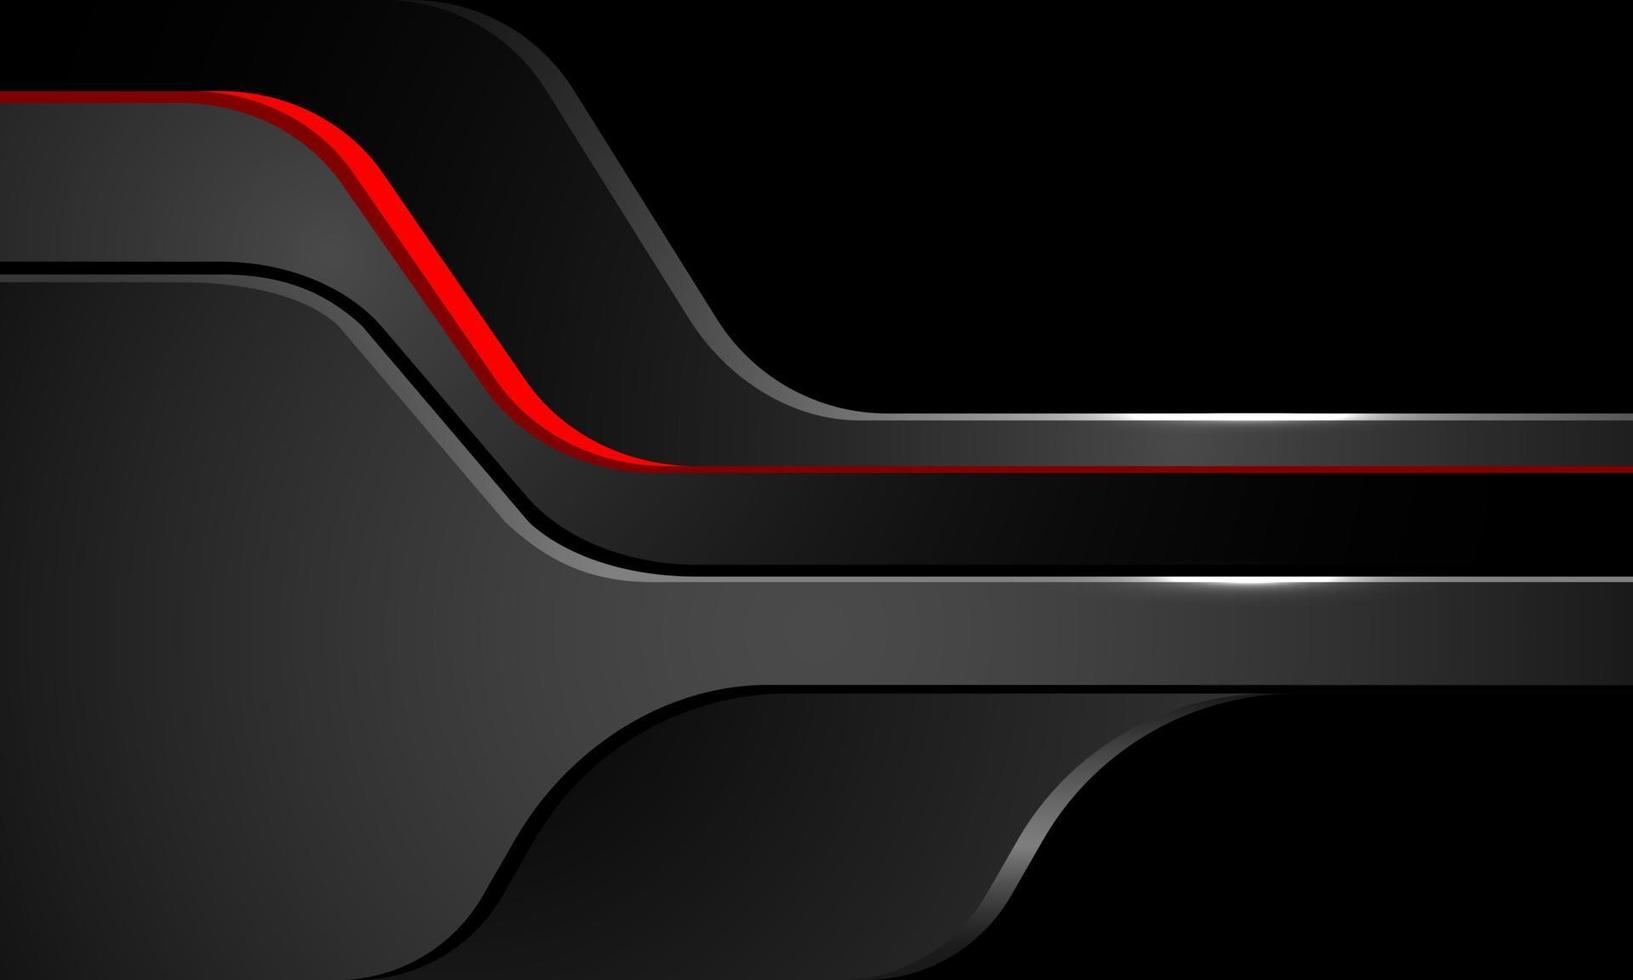 abstracte rode zwarte schaduwcurve overlap op grijs metalen ontwerp moderne futuristische achtergrond vector